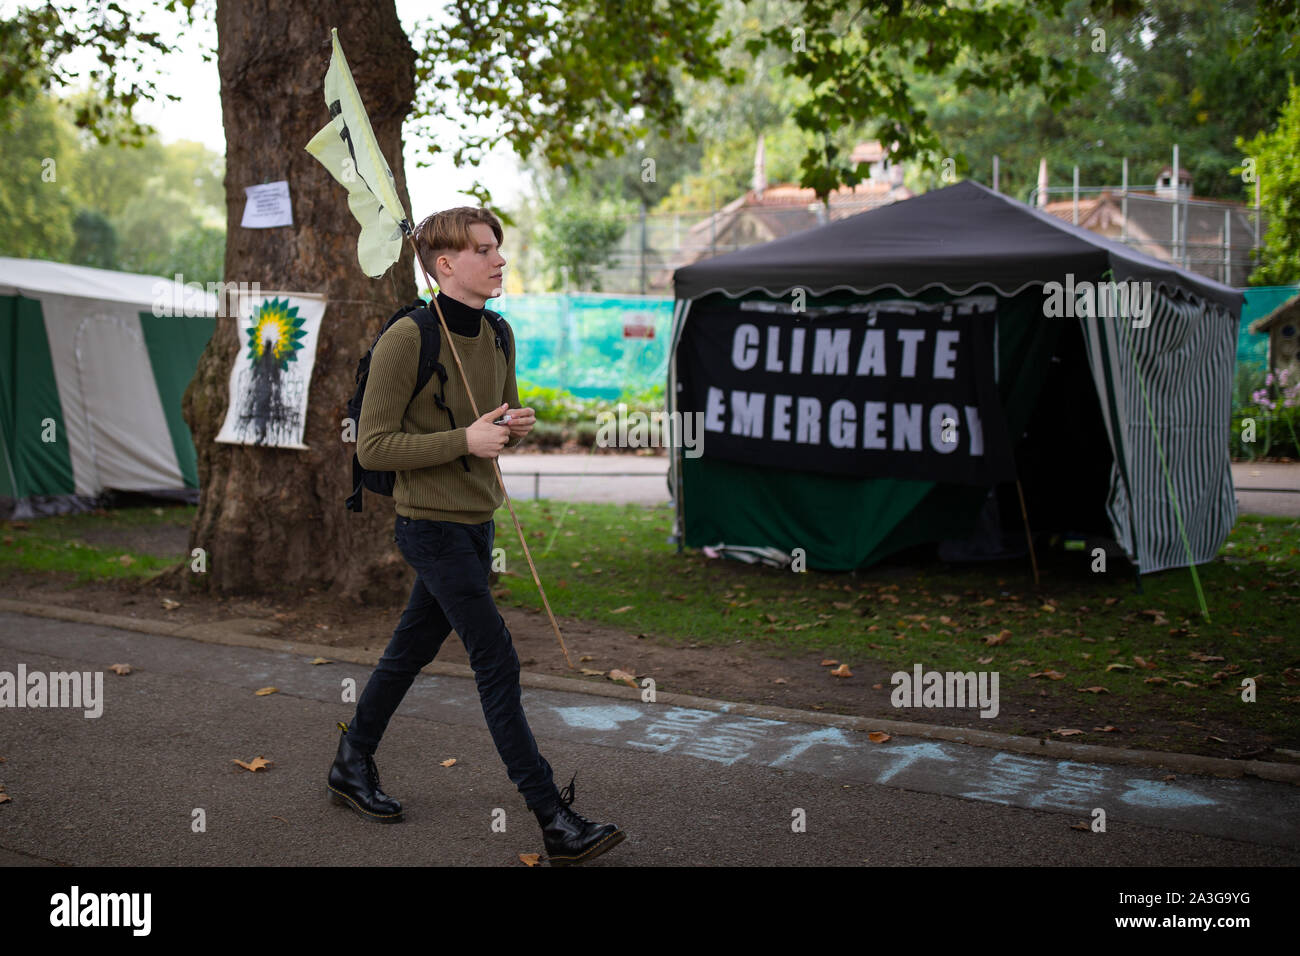 Demonstranten in St James's Park während der auslöschung Rebellion (XR) Klimawandel Protest in Central London. Stockfoto